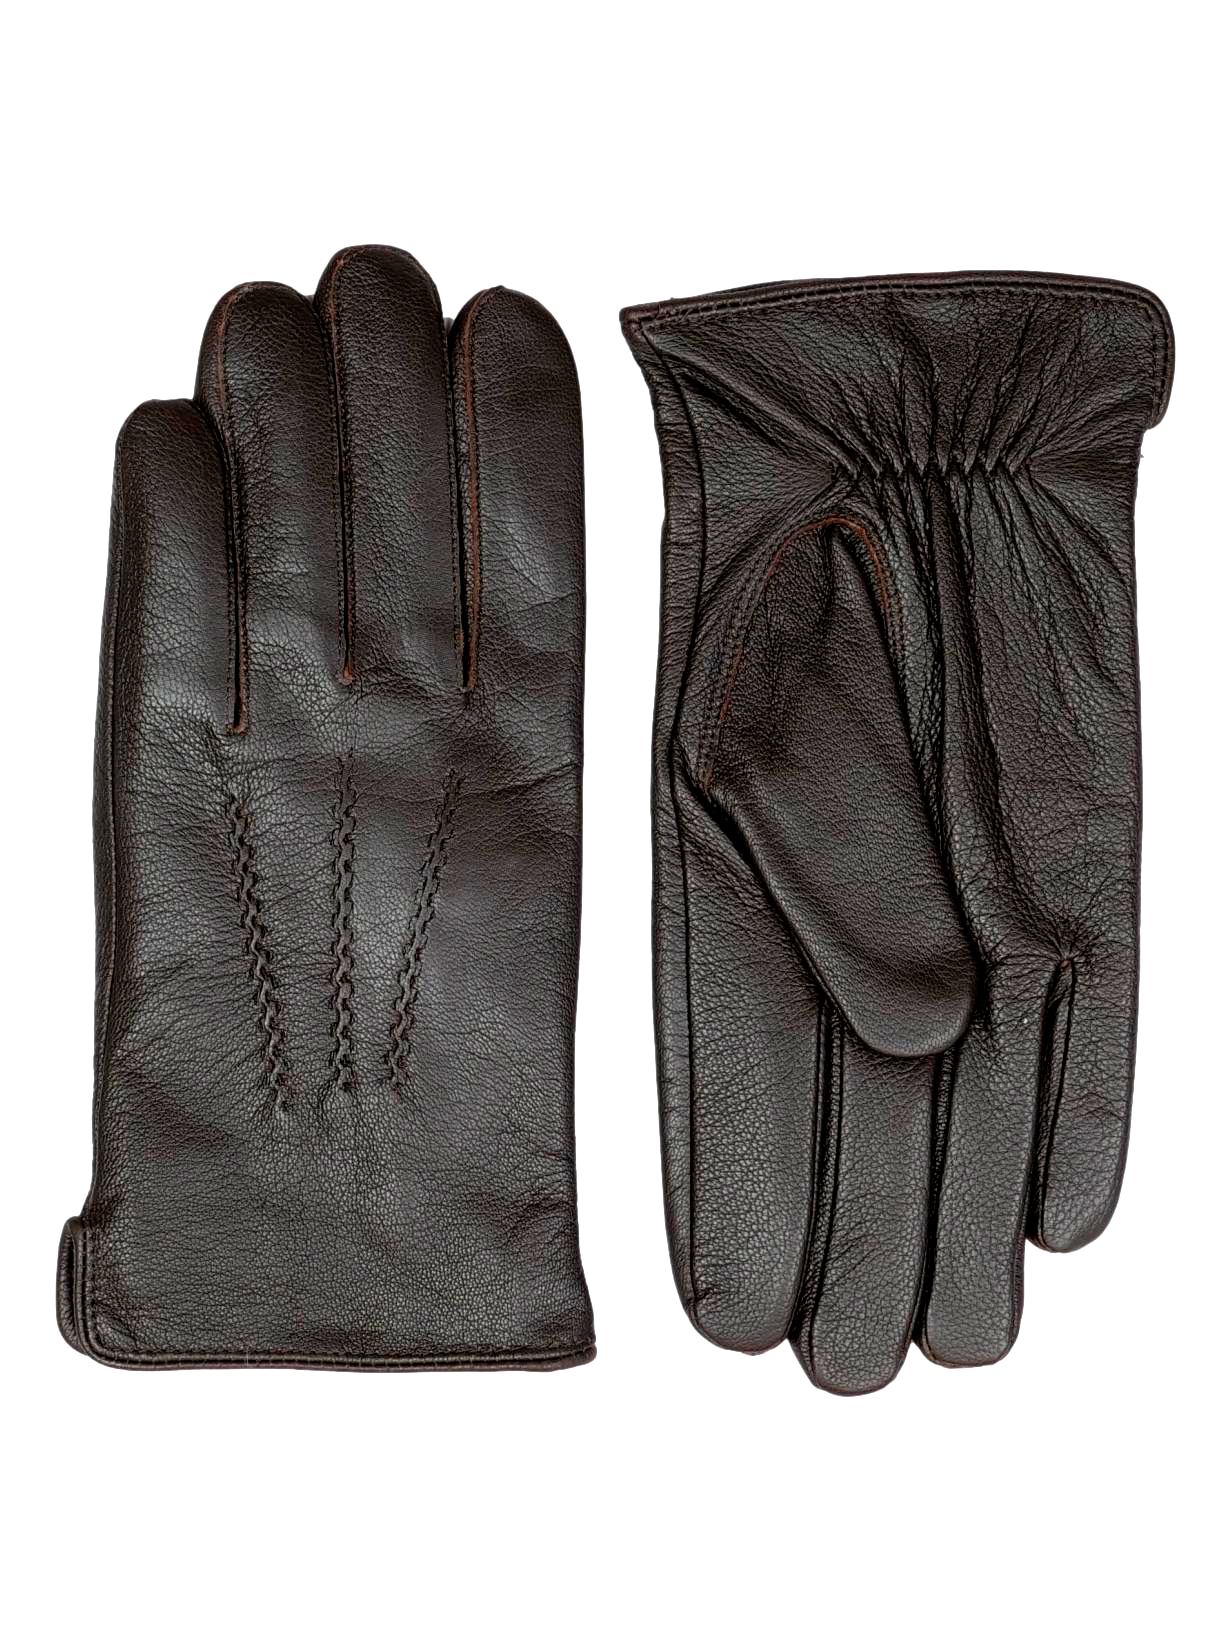 109 Glove - Goat Leather - Accesories - Dark Brown